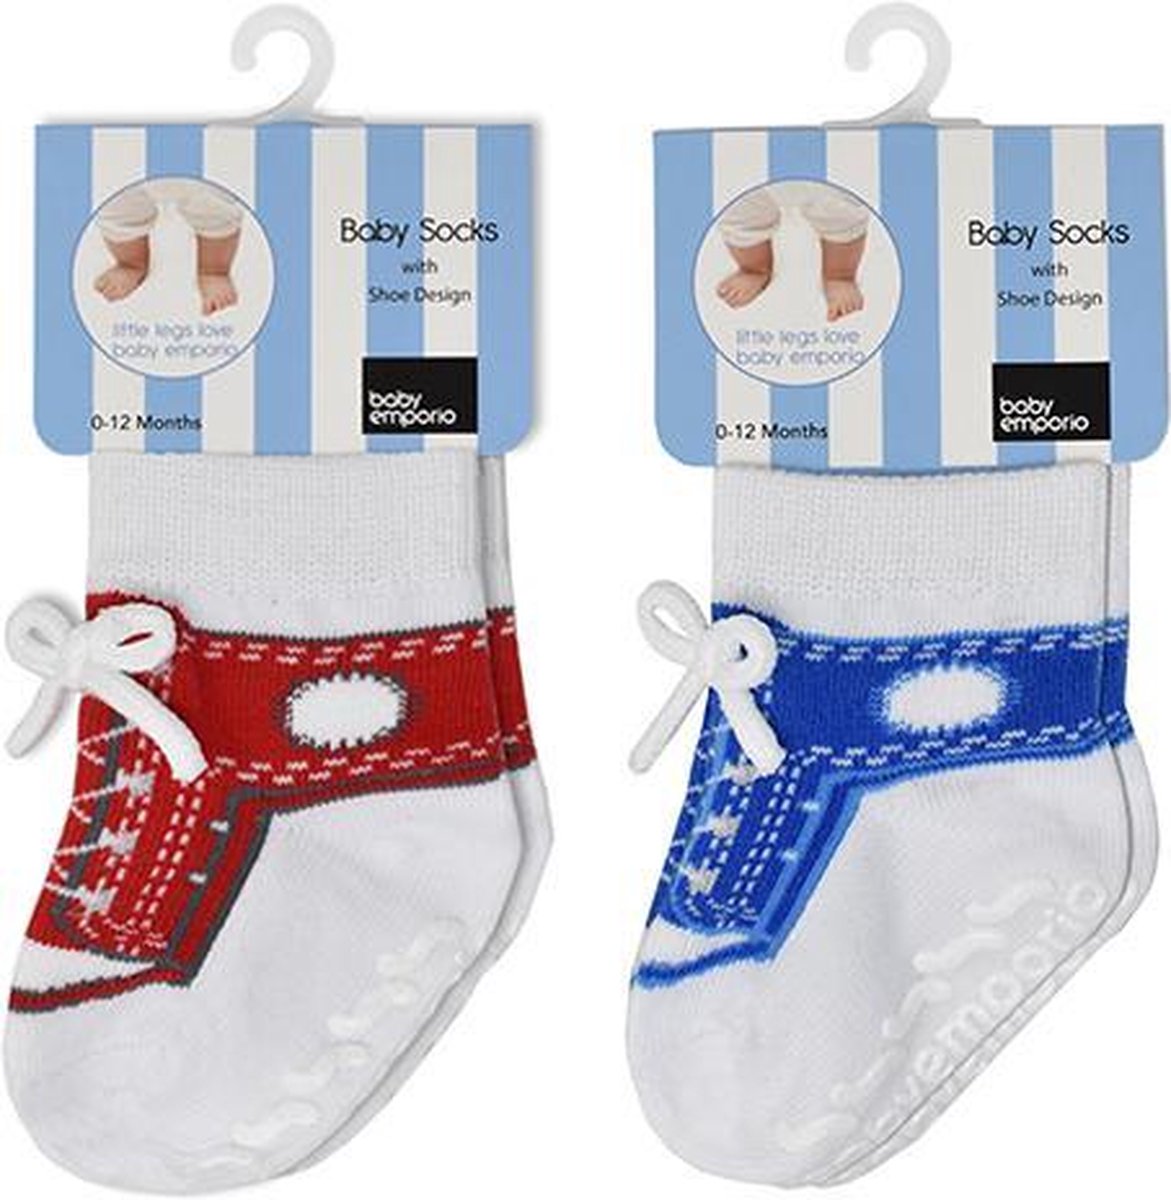 Boy Sneakers rode en blauwe sokjes voor baby 0-12 maanden-Witte vetertjes-Anti slip zooltjes-Kraamcadeau-Baby shower